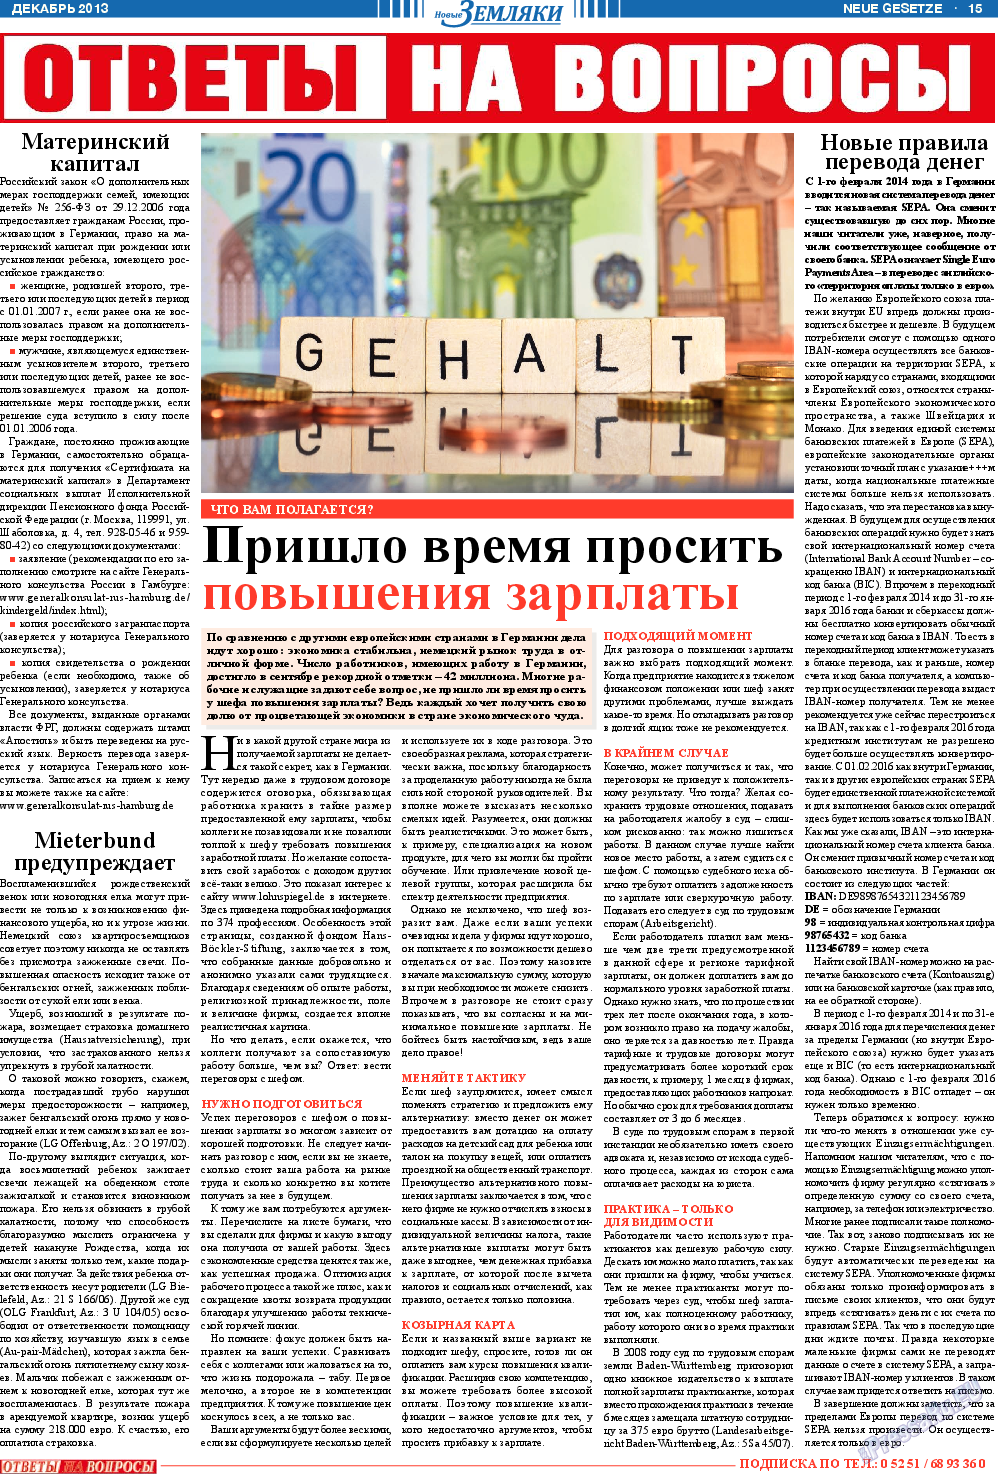 Новые Земляки, газета. 2013 №12 стр.15